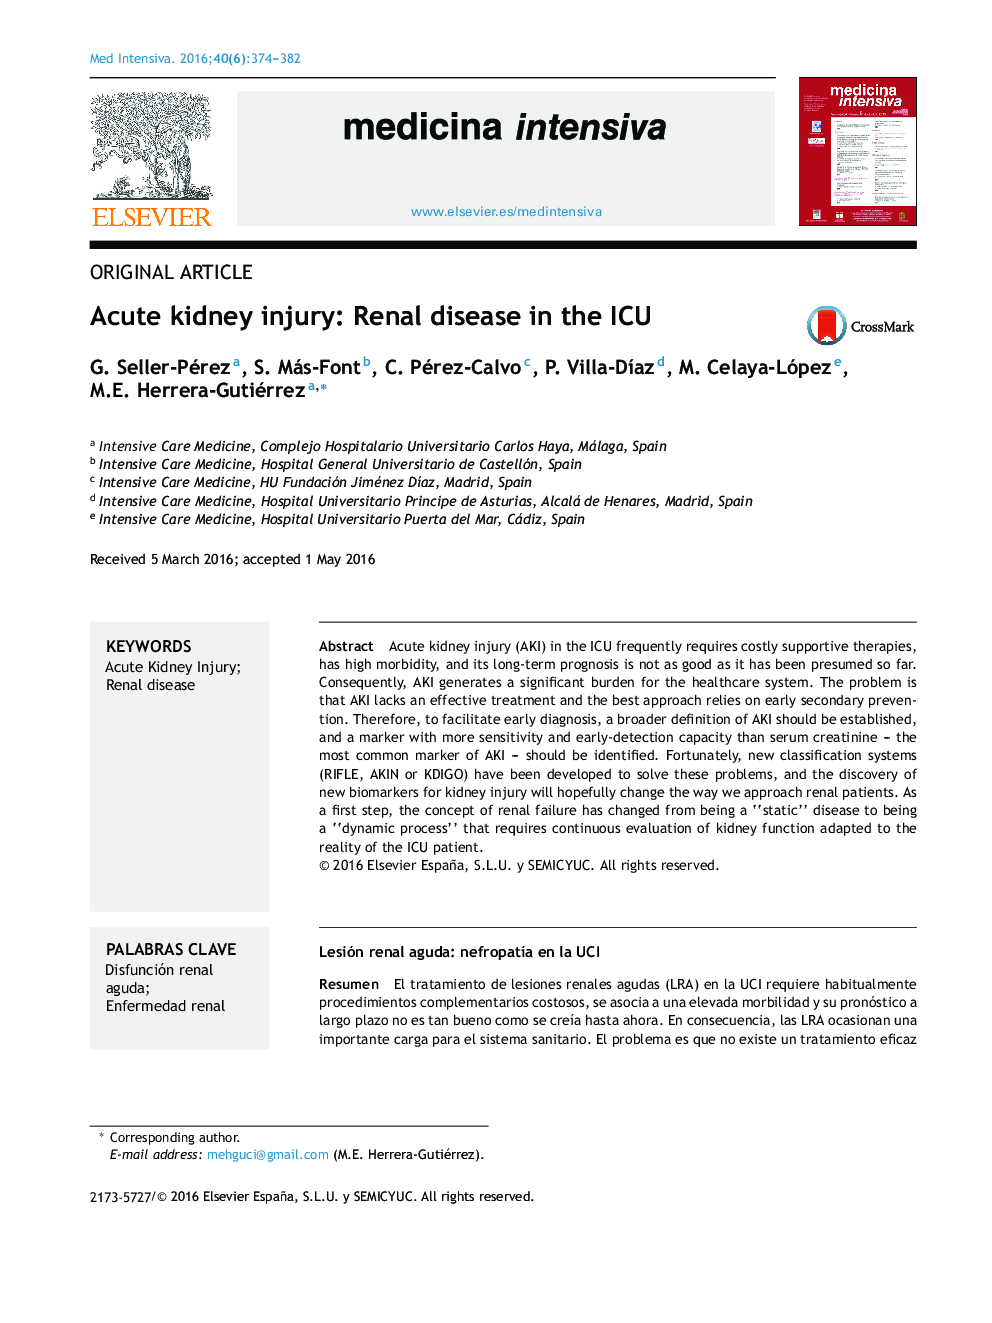 Acute kidney injury: Renal disease in the ICU